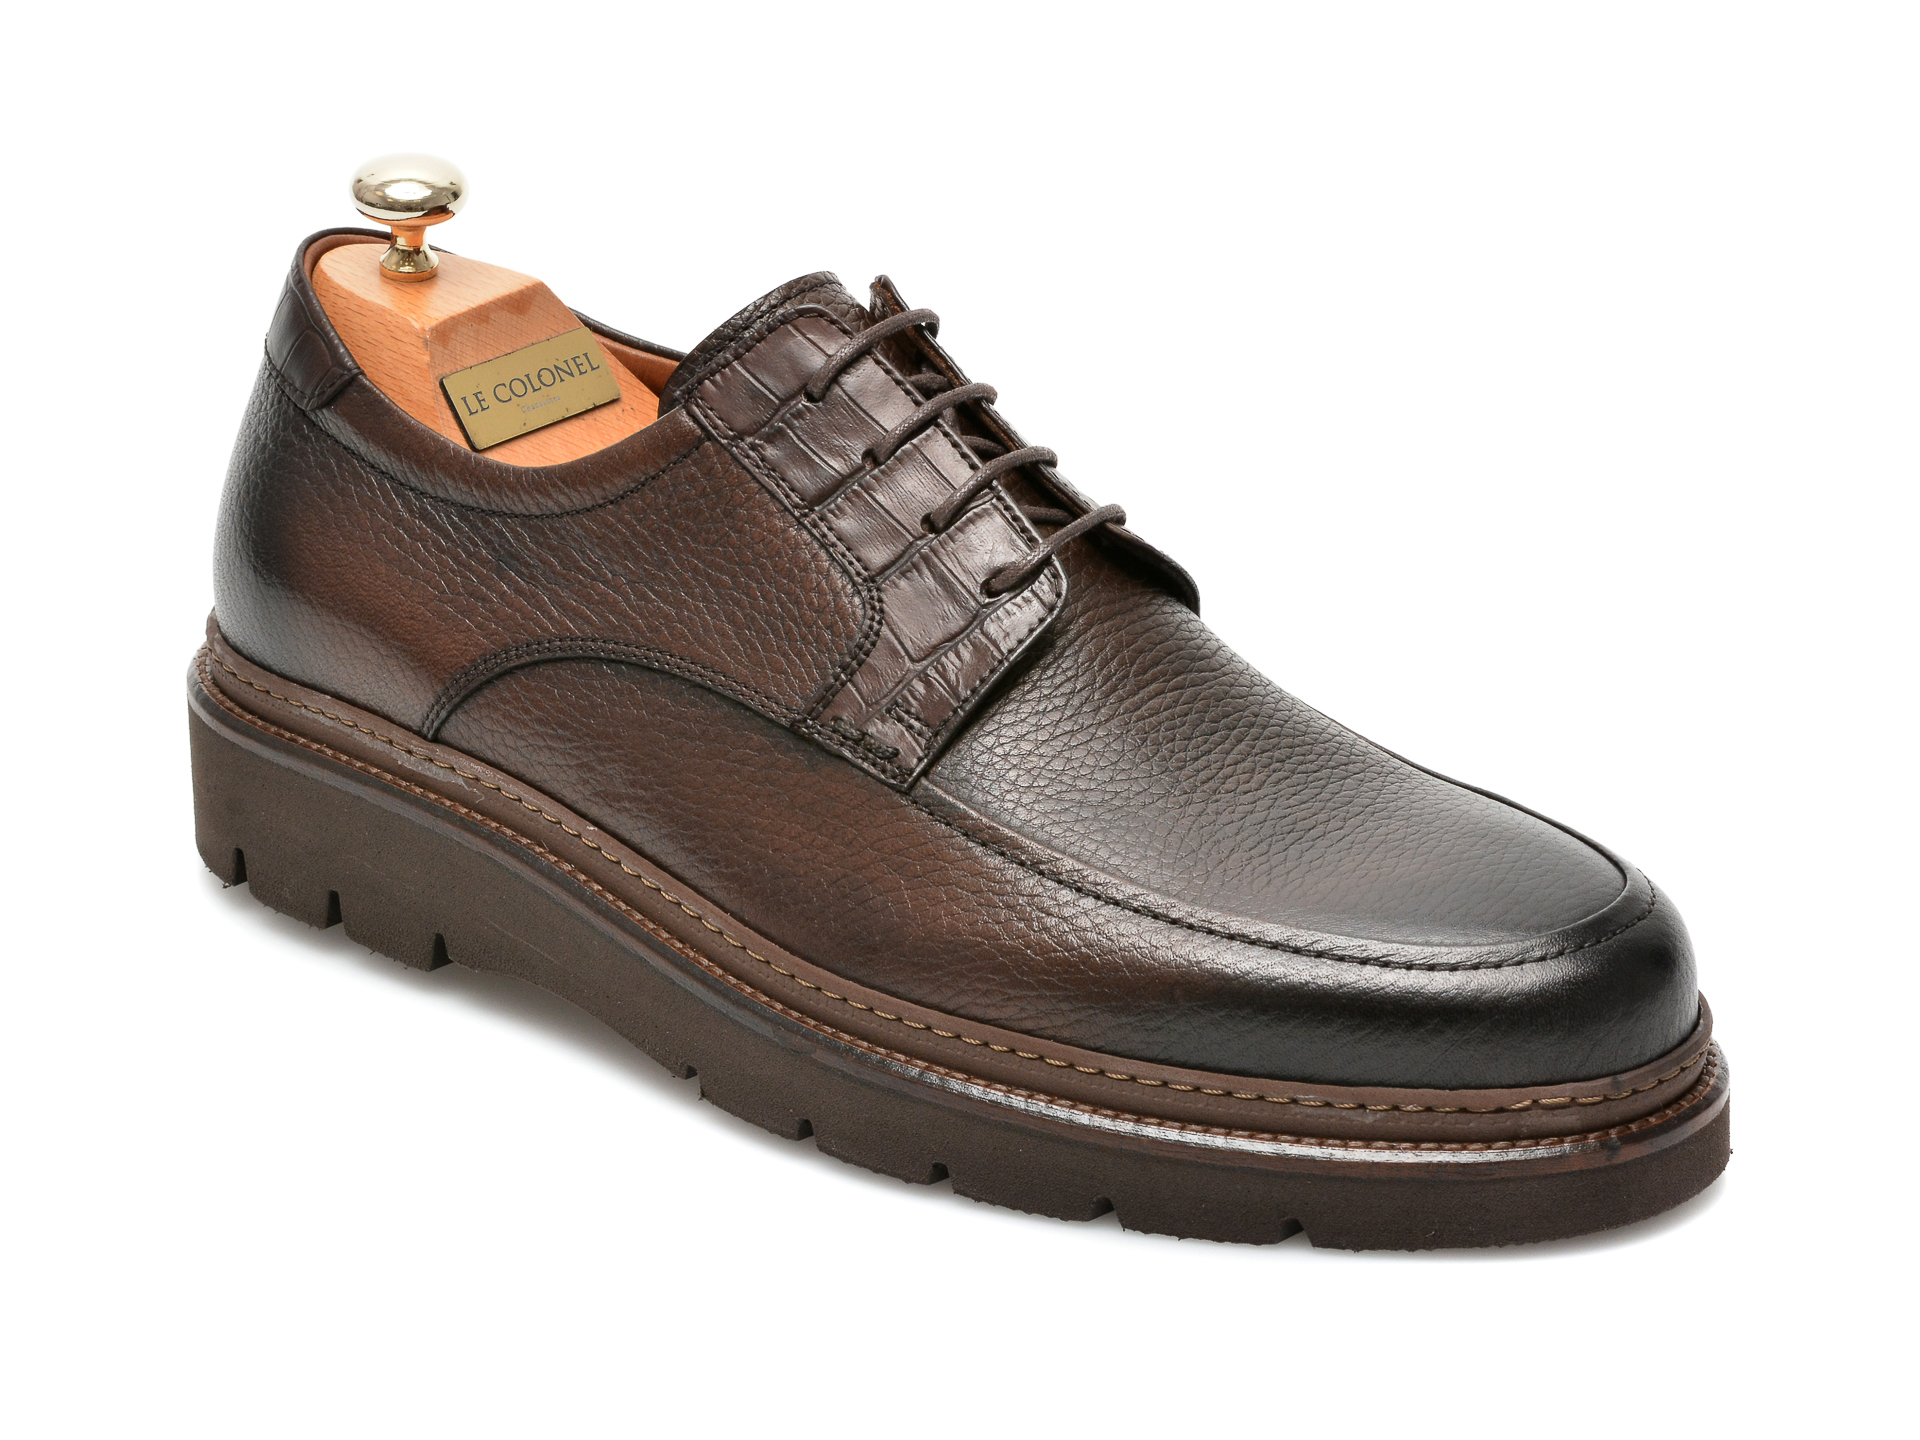 Pantofi LE COLONEL maro, 47302, din piele naturala 2022 ❤️ Pret Super tezyo.ro imagine noua 2022